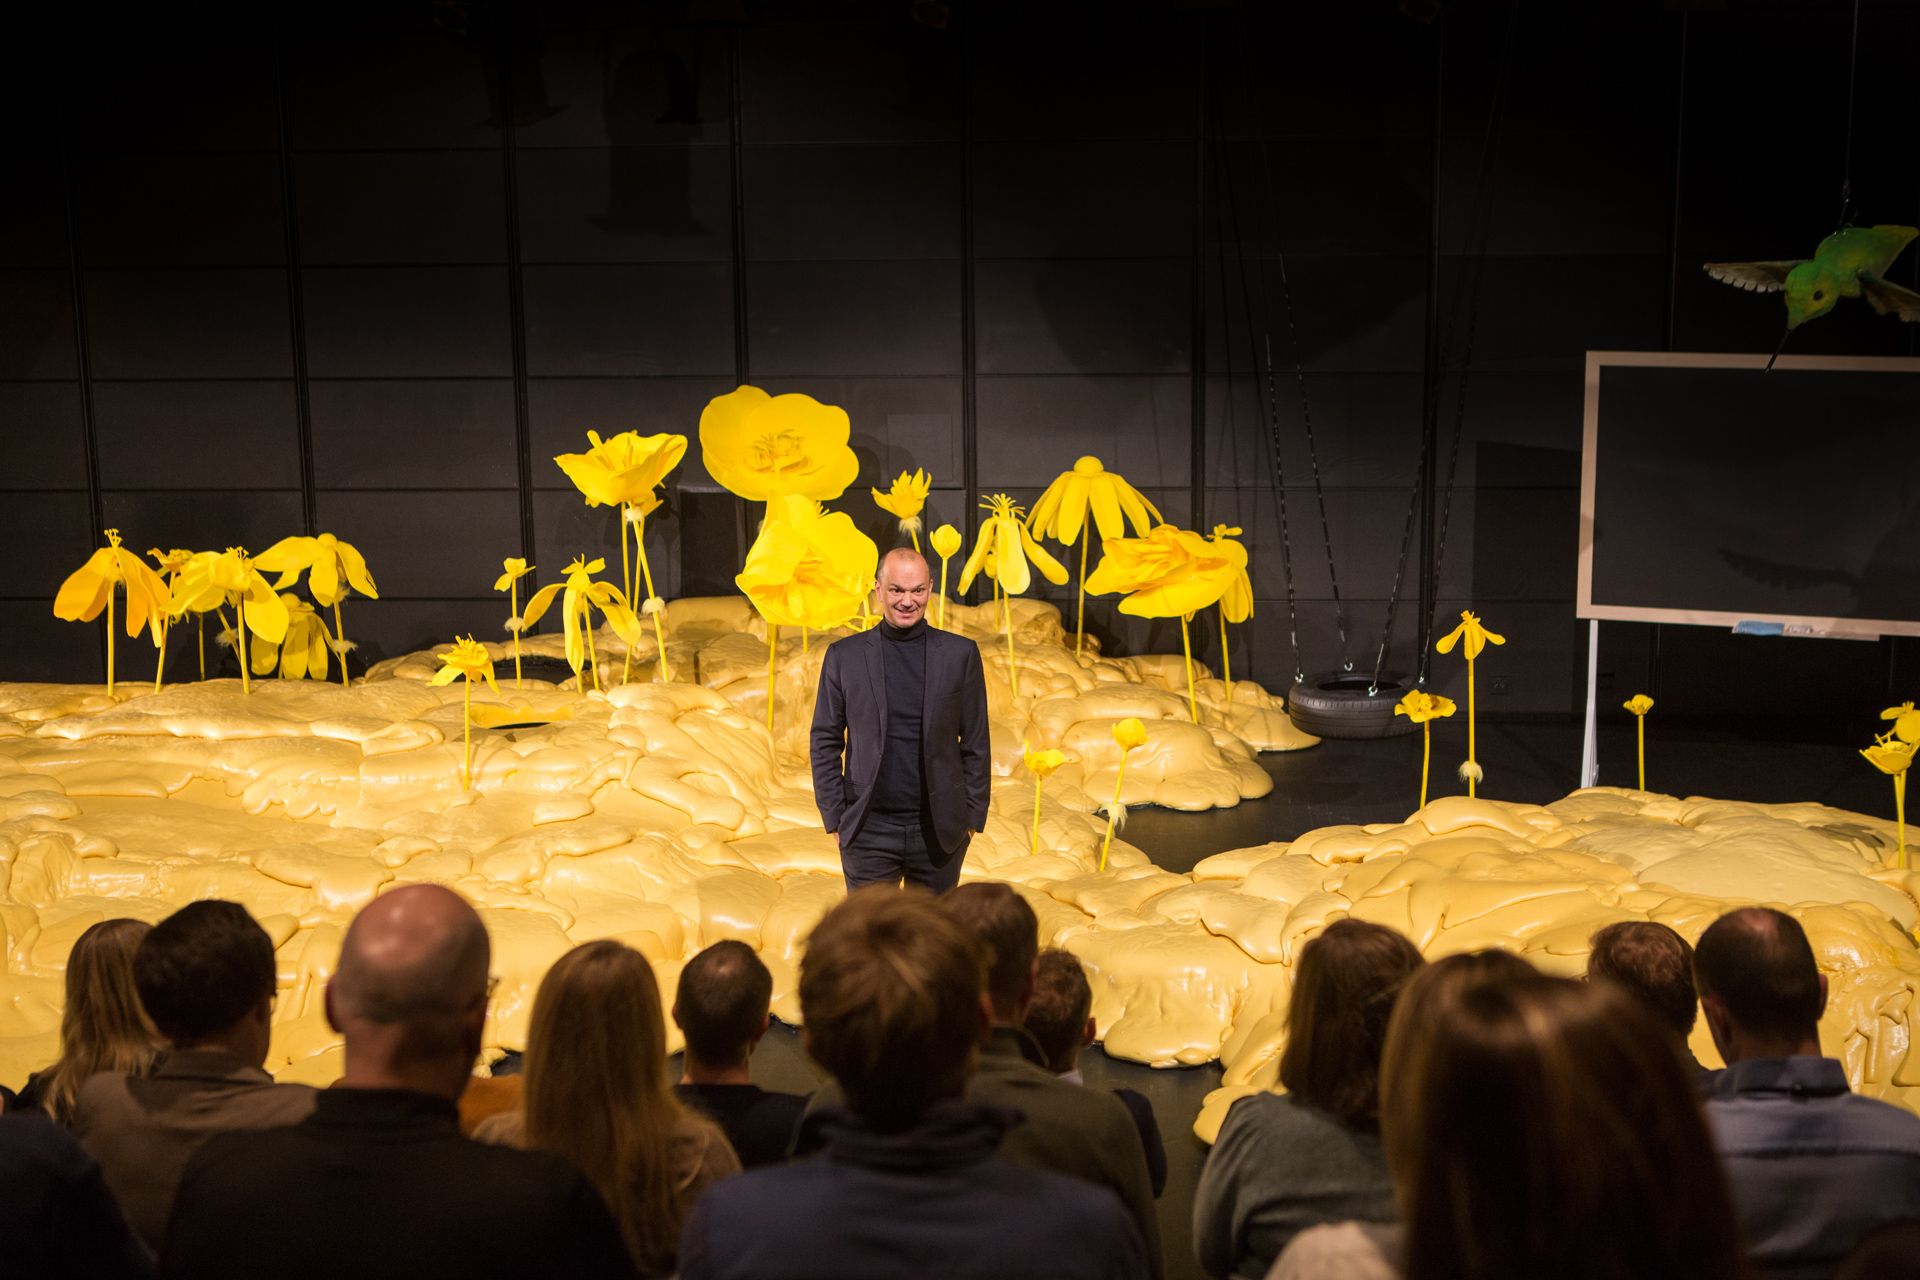 Mann i mørk dress som står på en scene og snakker til en forsamling. På scenen er det gult gulv og gule blomstre.